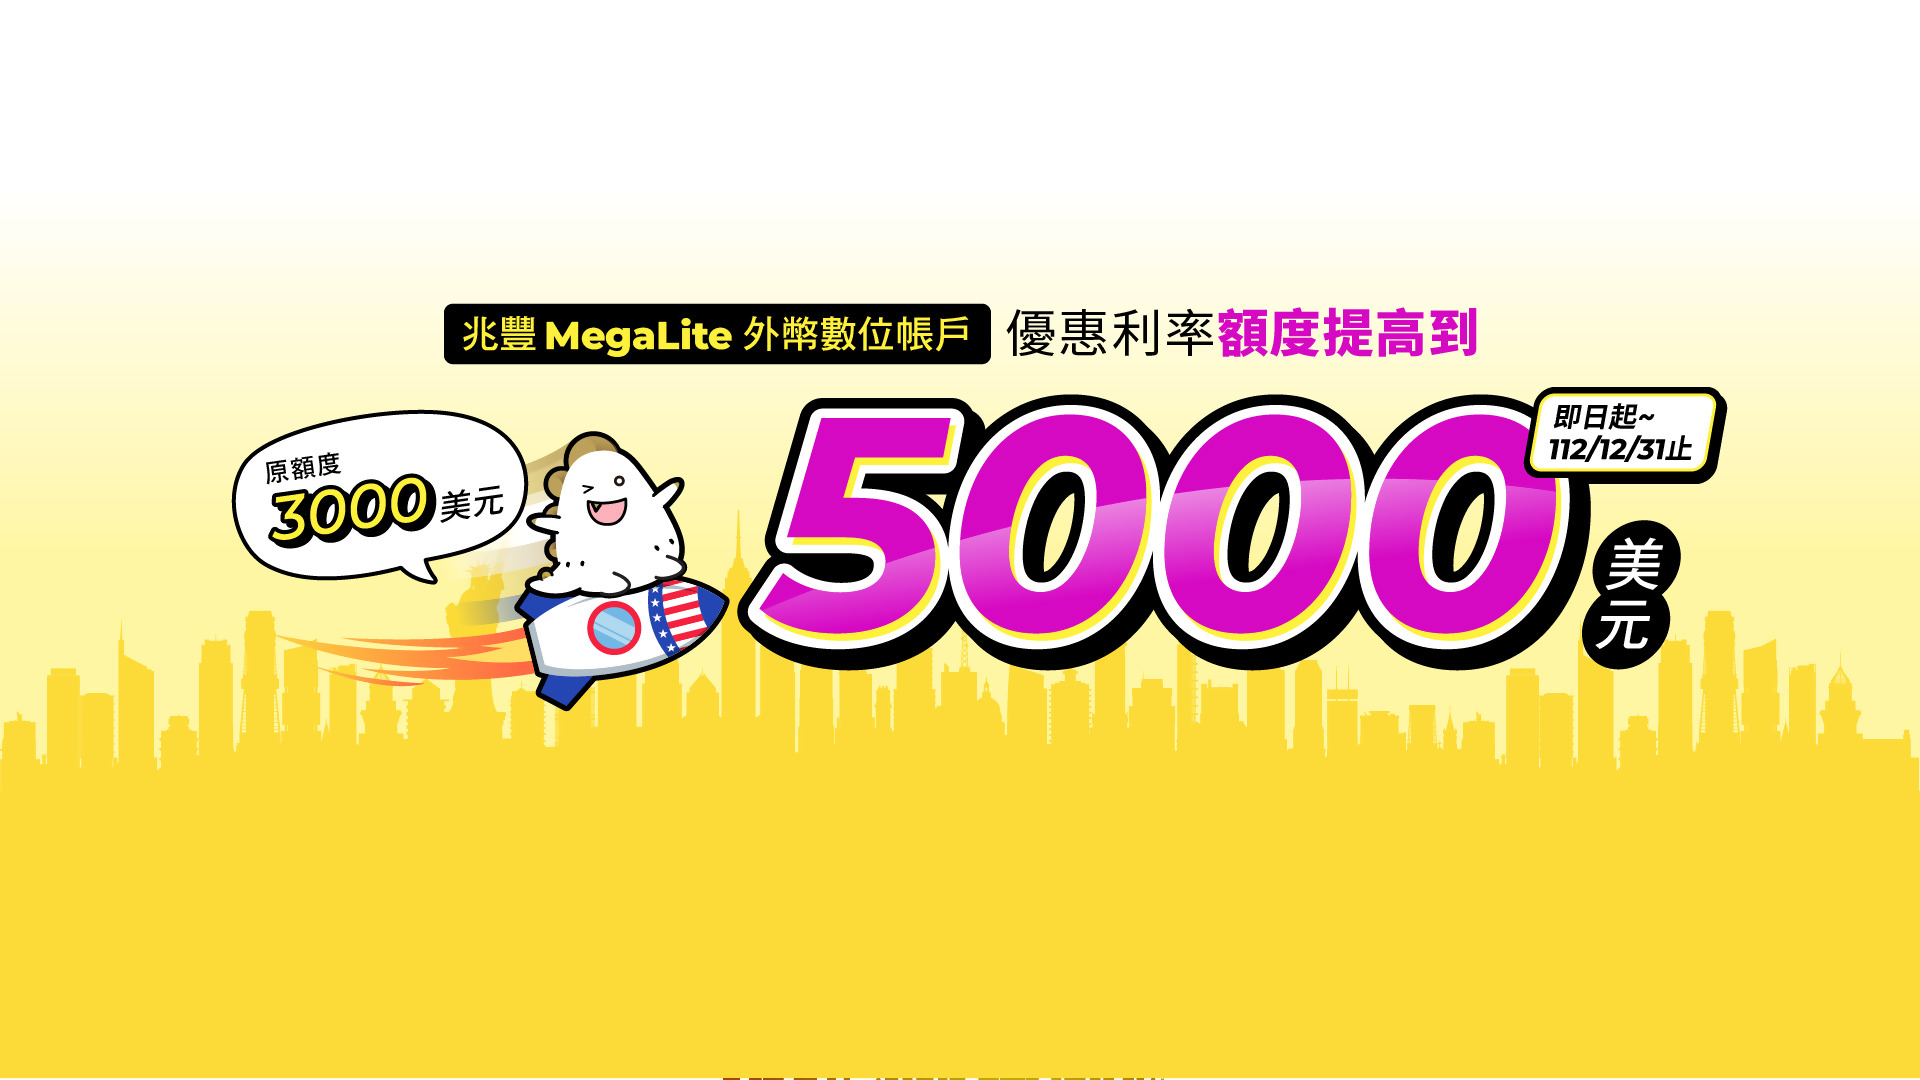 兆豐MegaLite數位帳戶美元優利額度提高為5000元_BN